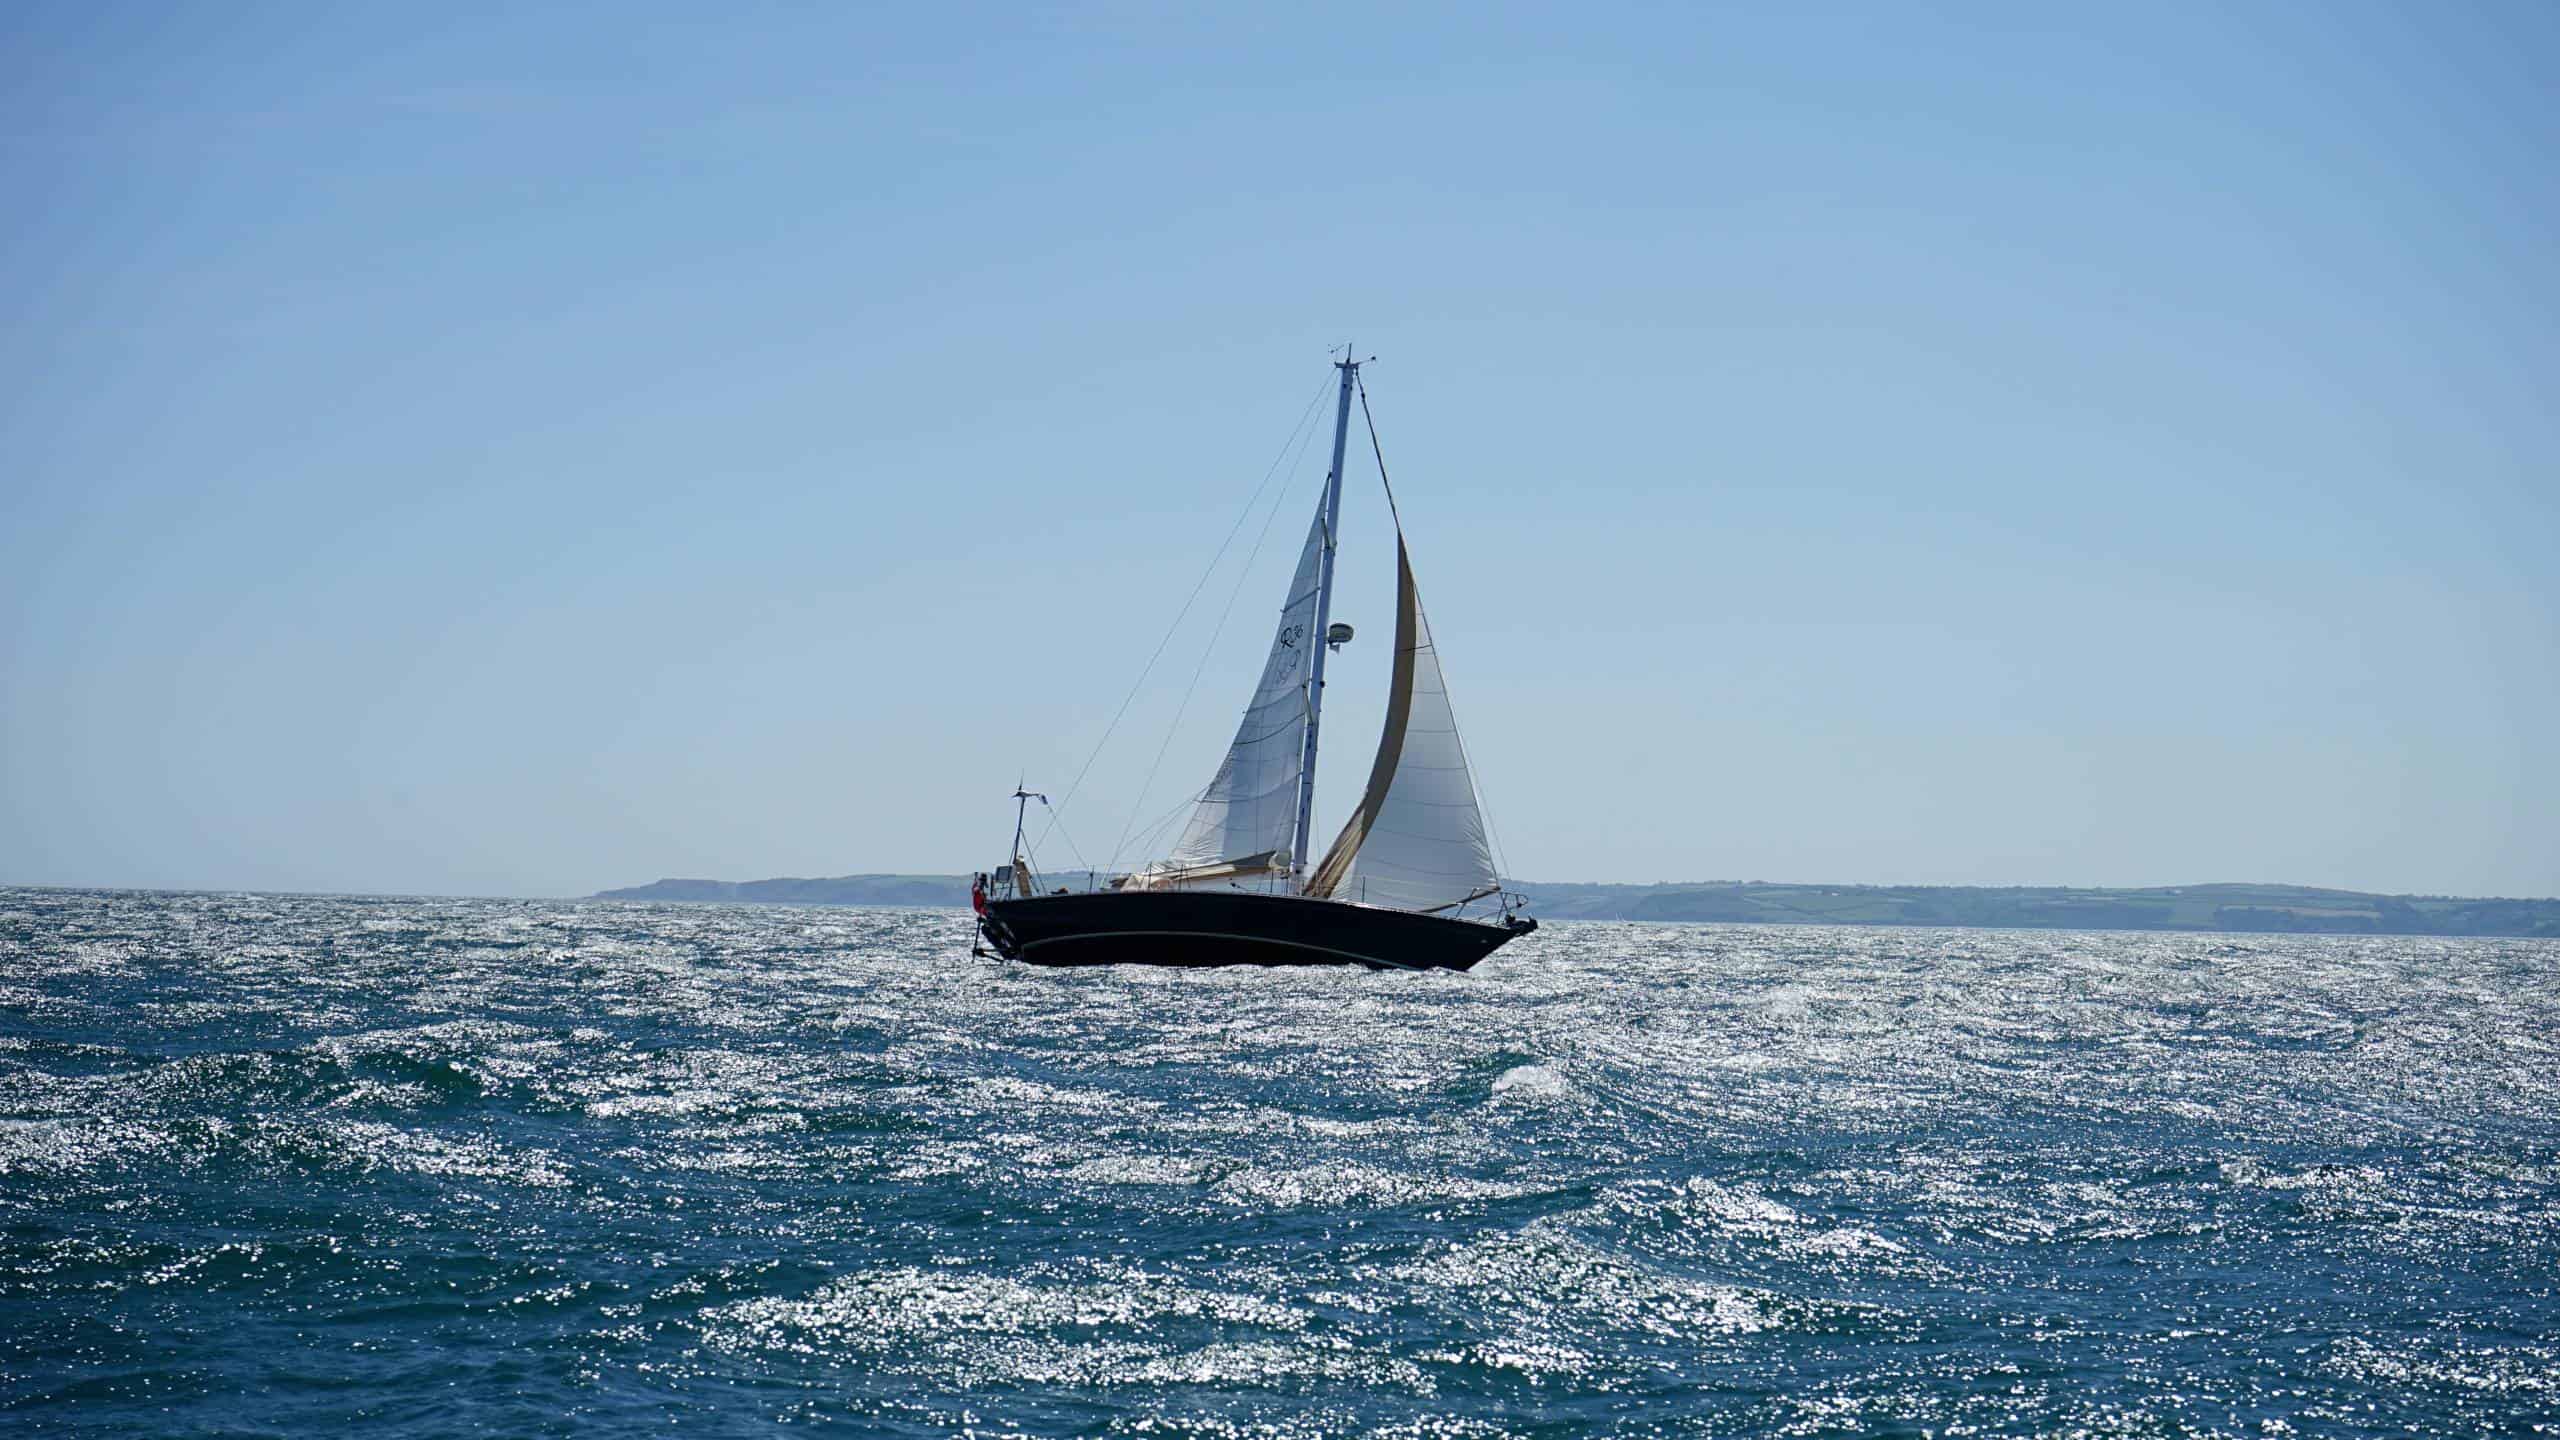 A yacht sailing on a calm sea.